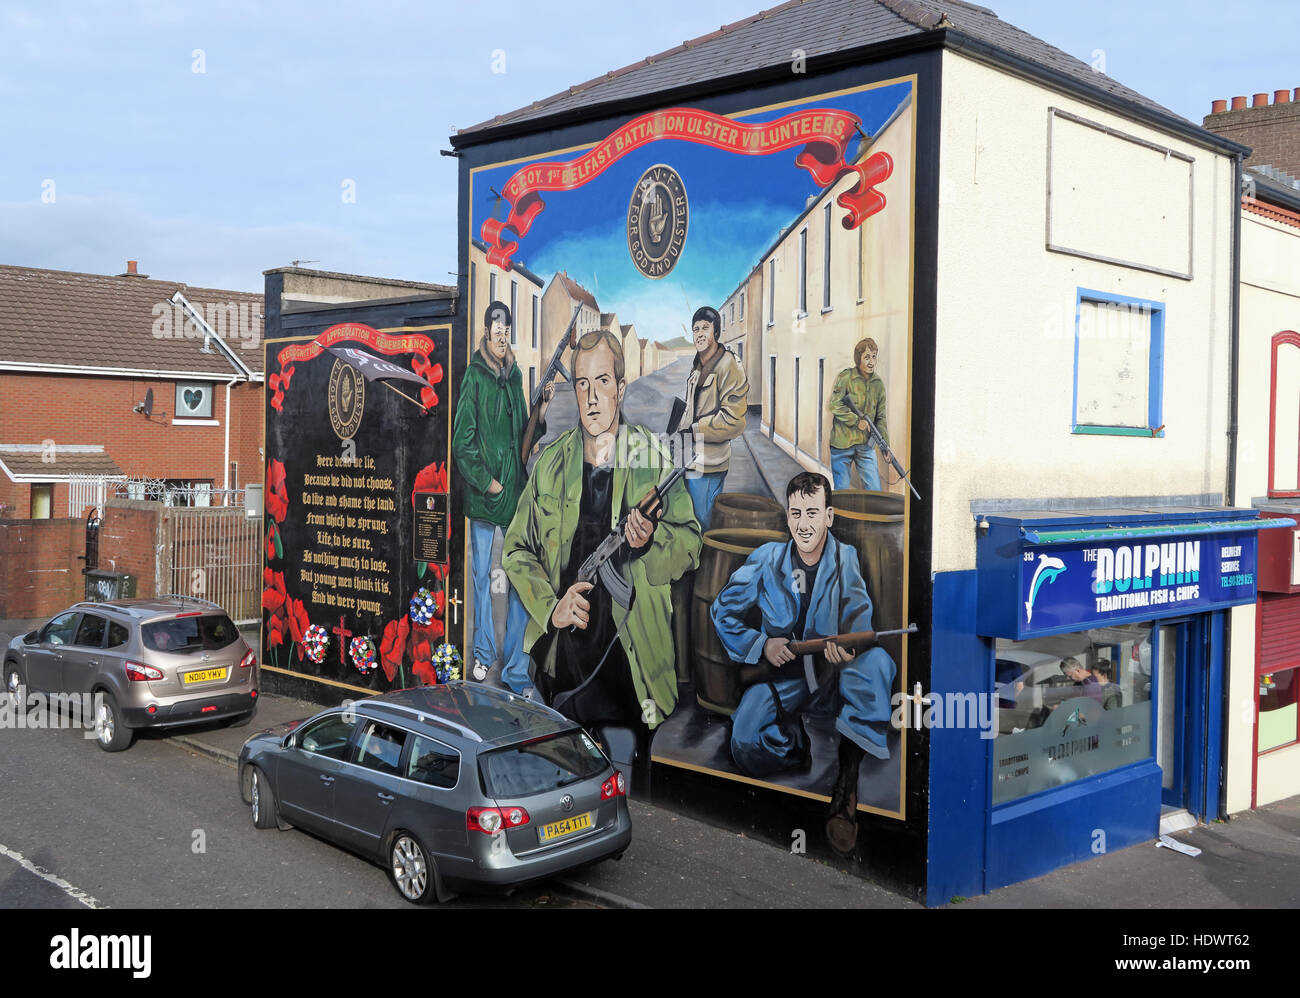 UFF bénévoles murale unioniste, off Shankill Road West Belfast, Irlande du Nord, Royaume-Uni Banque D'Images